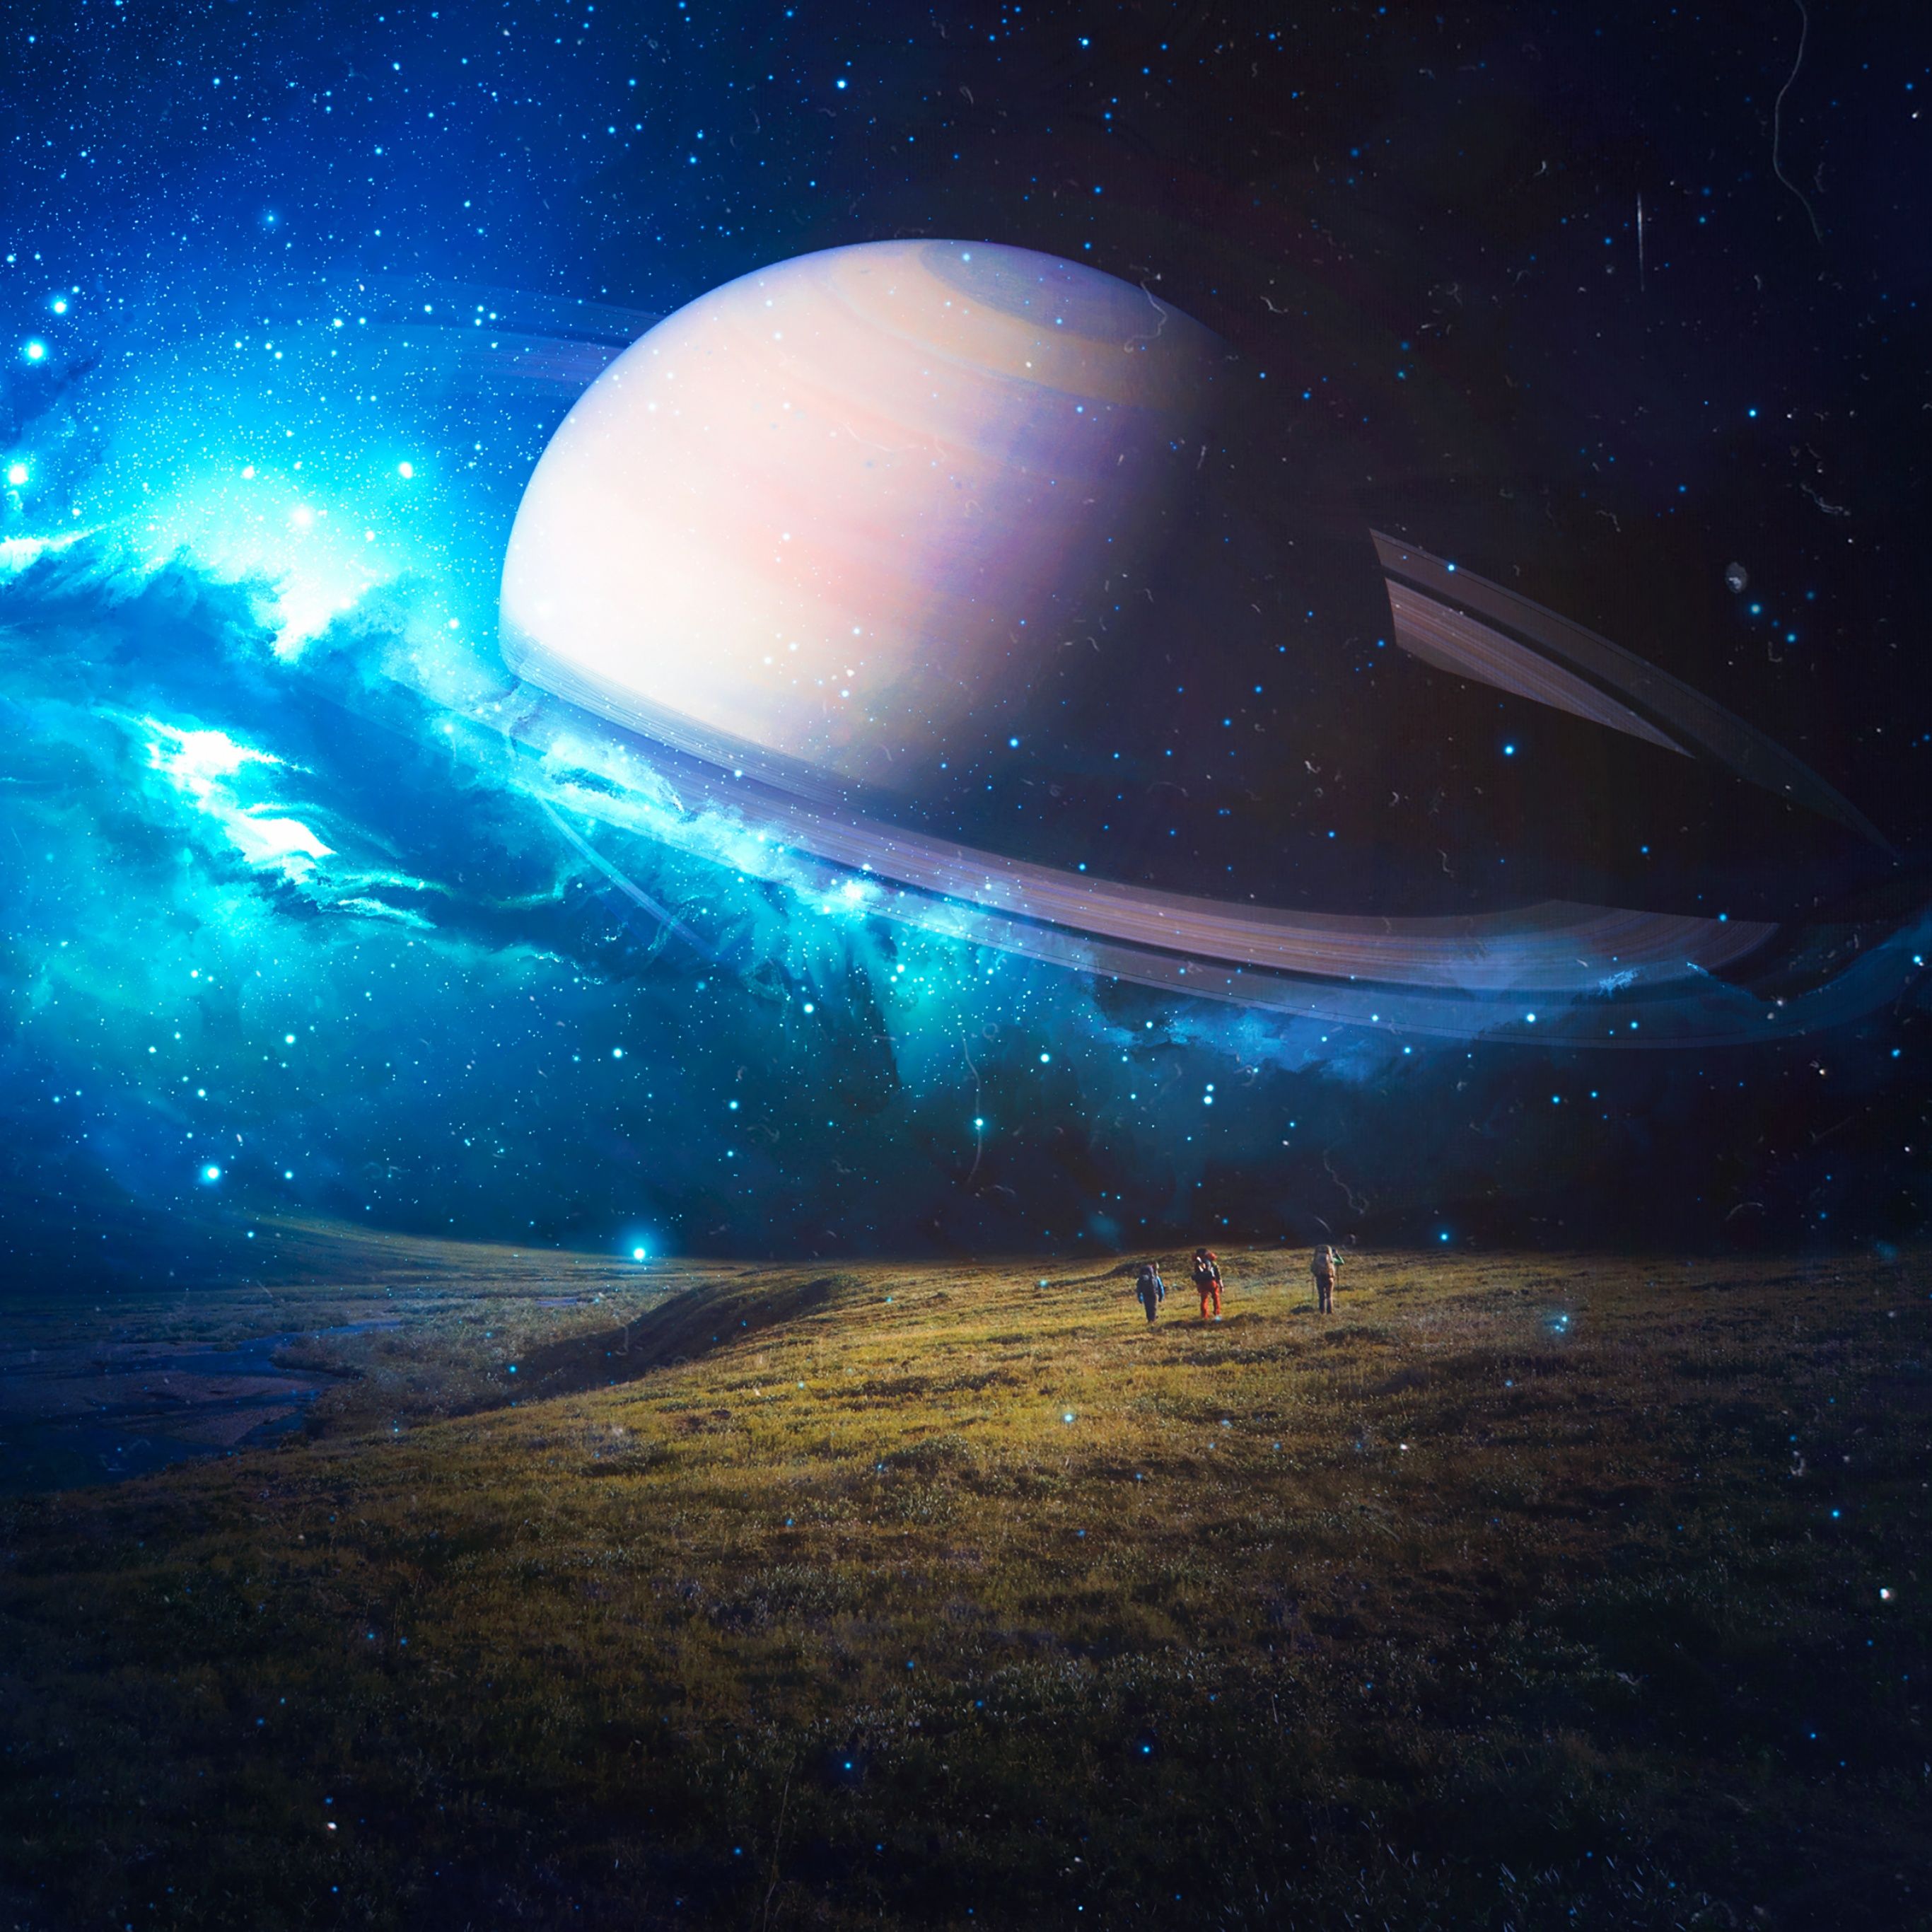 Exploring Wallpaper 4K, Saturn, Planet, Surreal, Fantasy